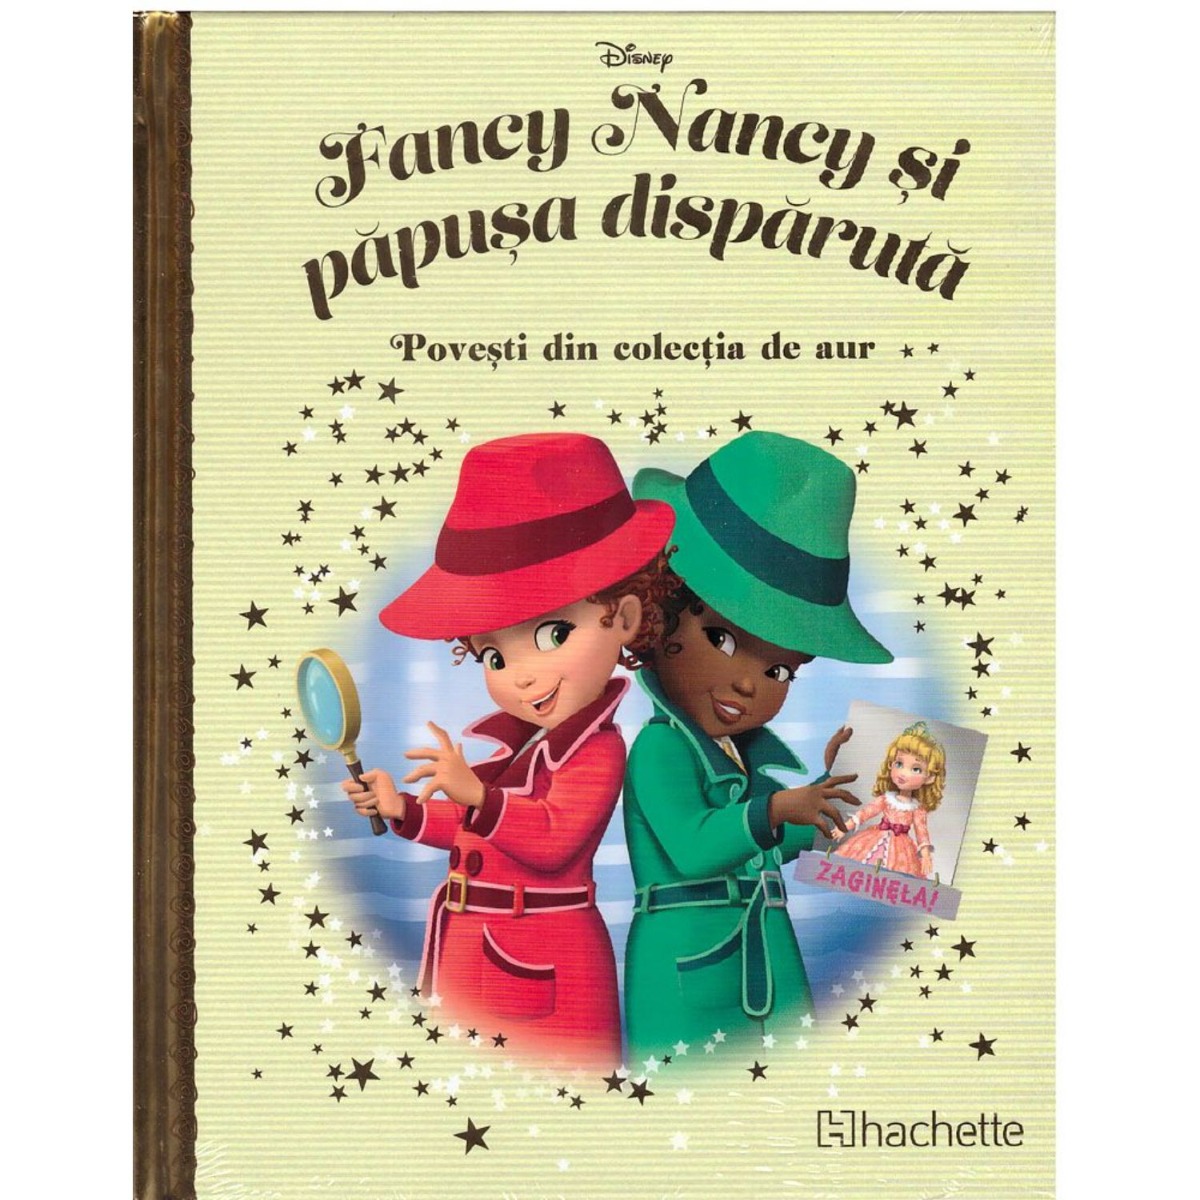 Disney: Fancy Nancy si papusa disparuta